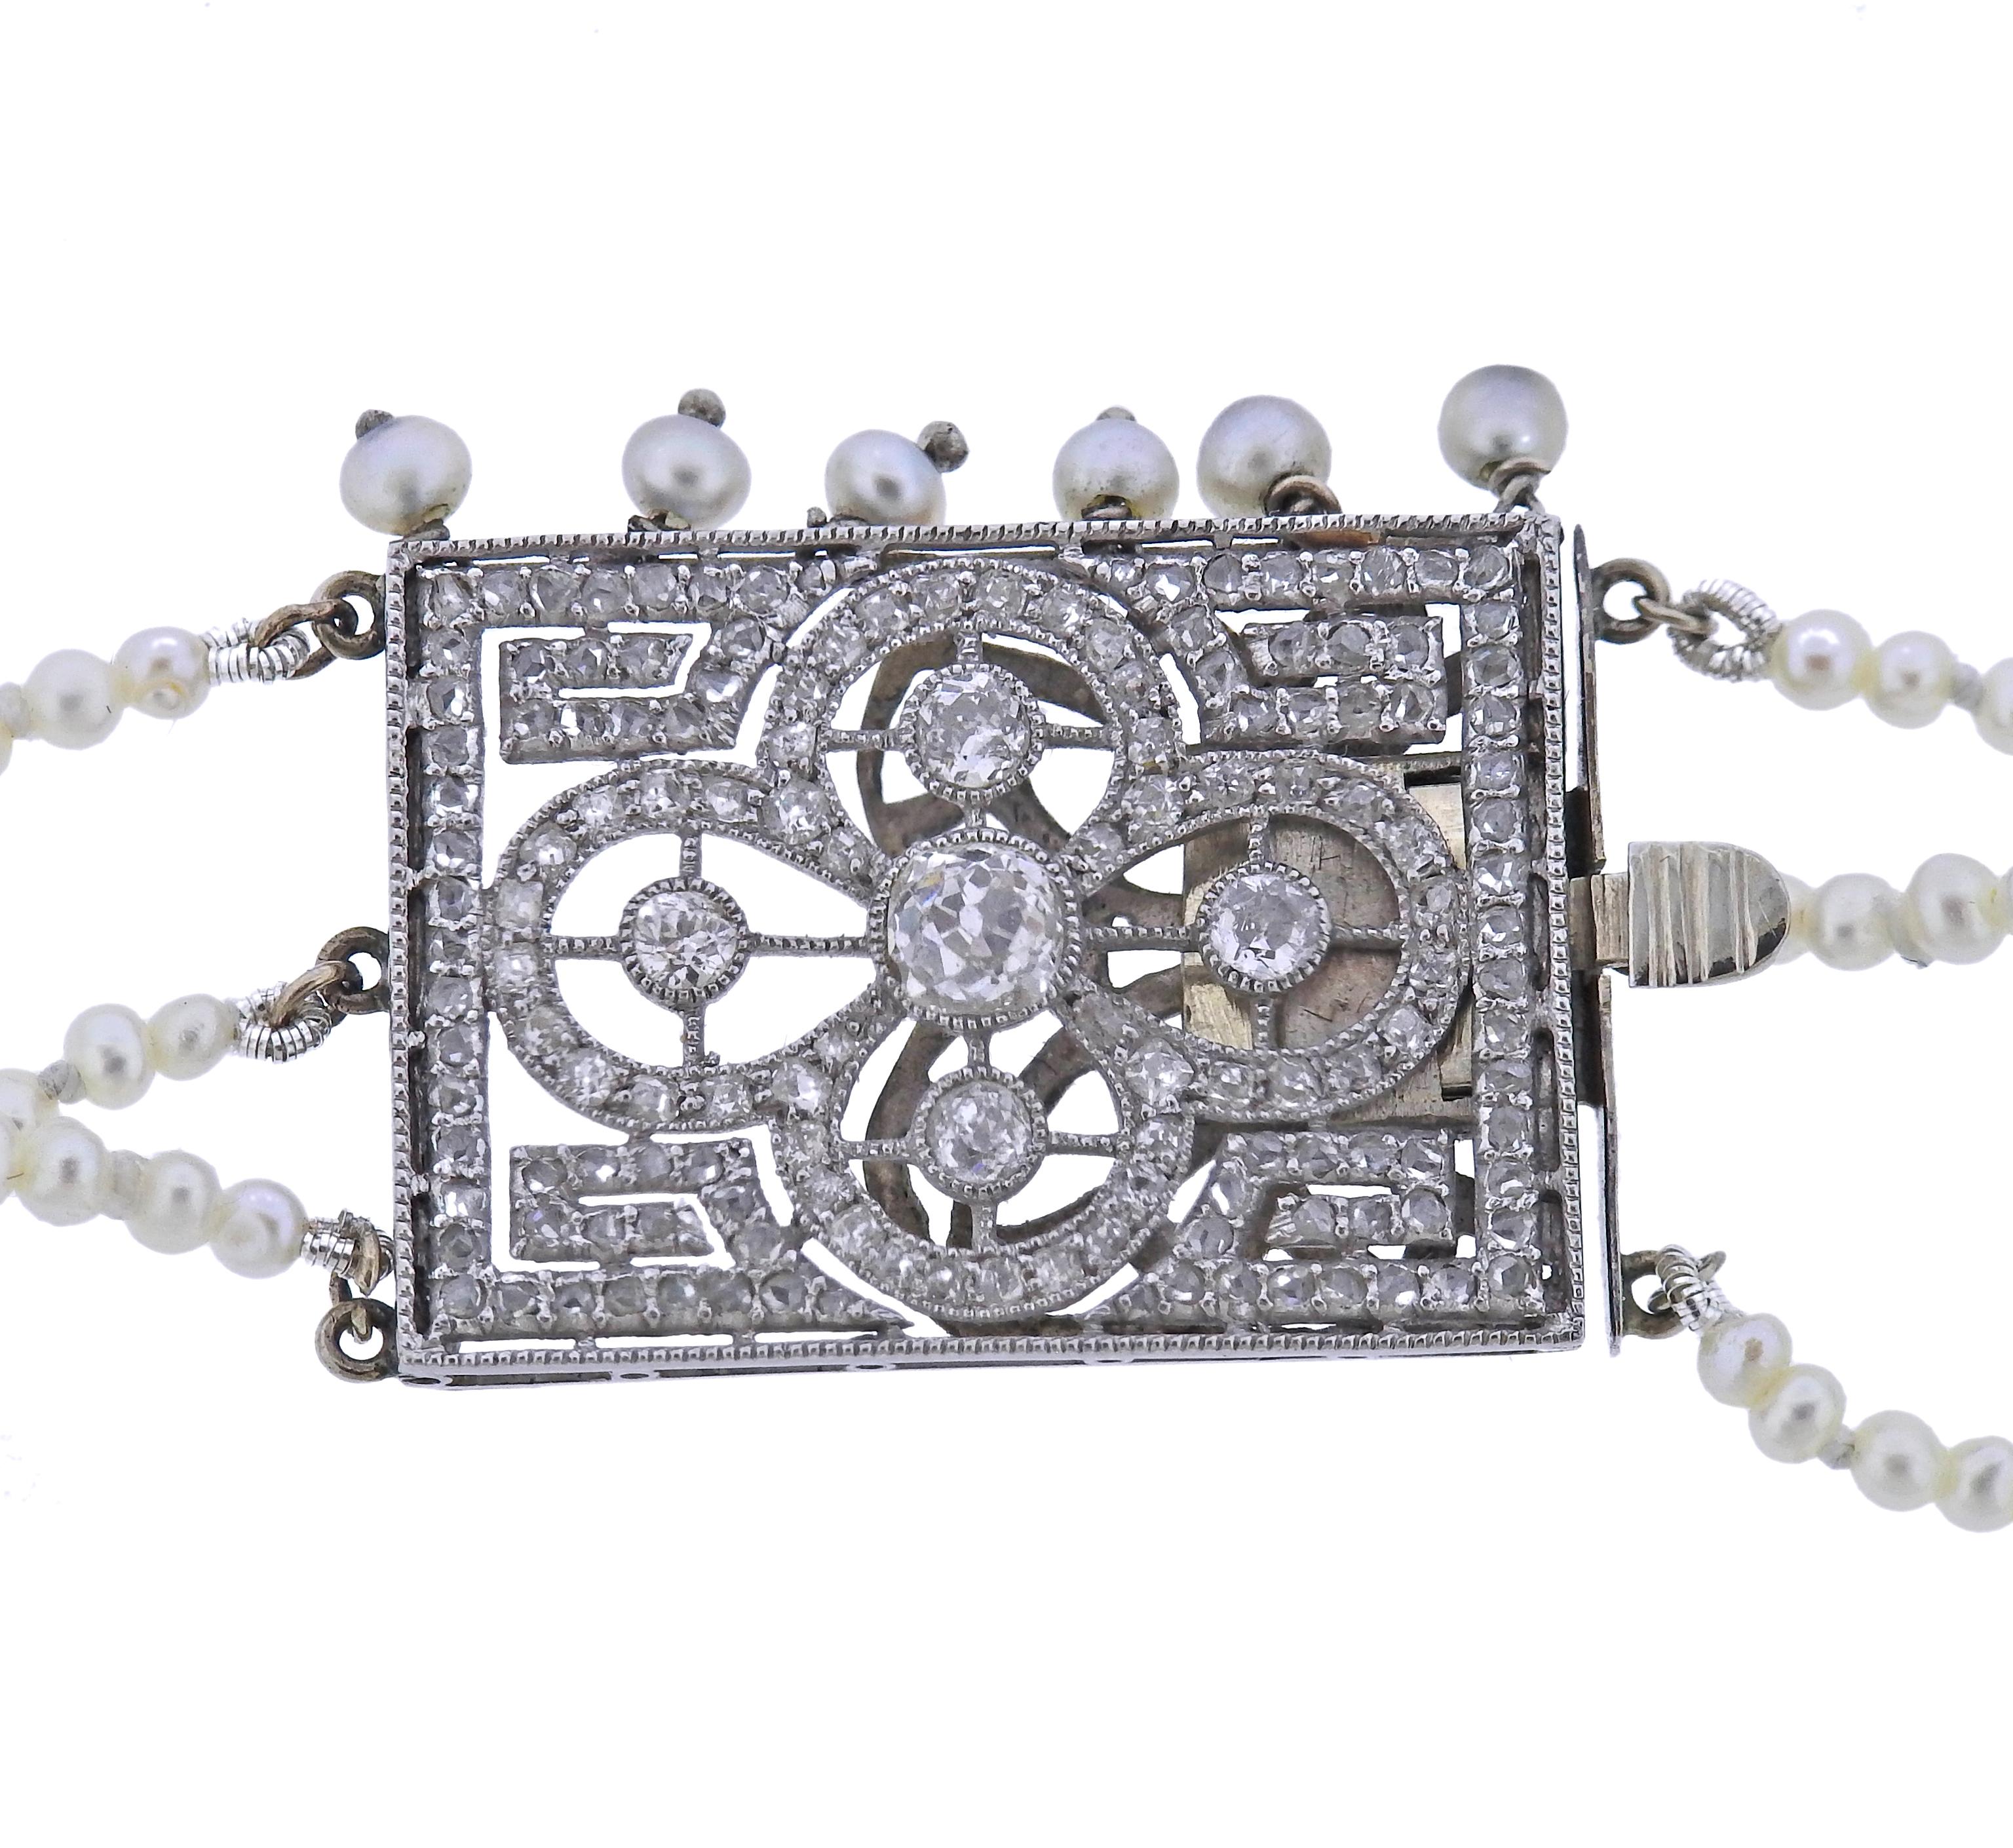 Antikes edwardianisches Platin-Collier mit 3 Strängen aus 2-2,5 mm großen Perlen und tropfenförmigen Smaragden (Maße von ca. 11,8 x 7,5 mm bis 22 x 15,3 mm). Schließe verziert mit alten Minen und kleinen Diamanten im Rosenschliff. Die Halskette ist